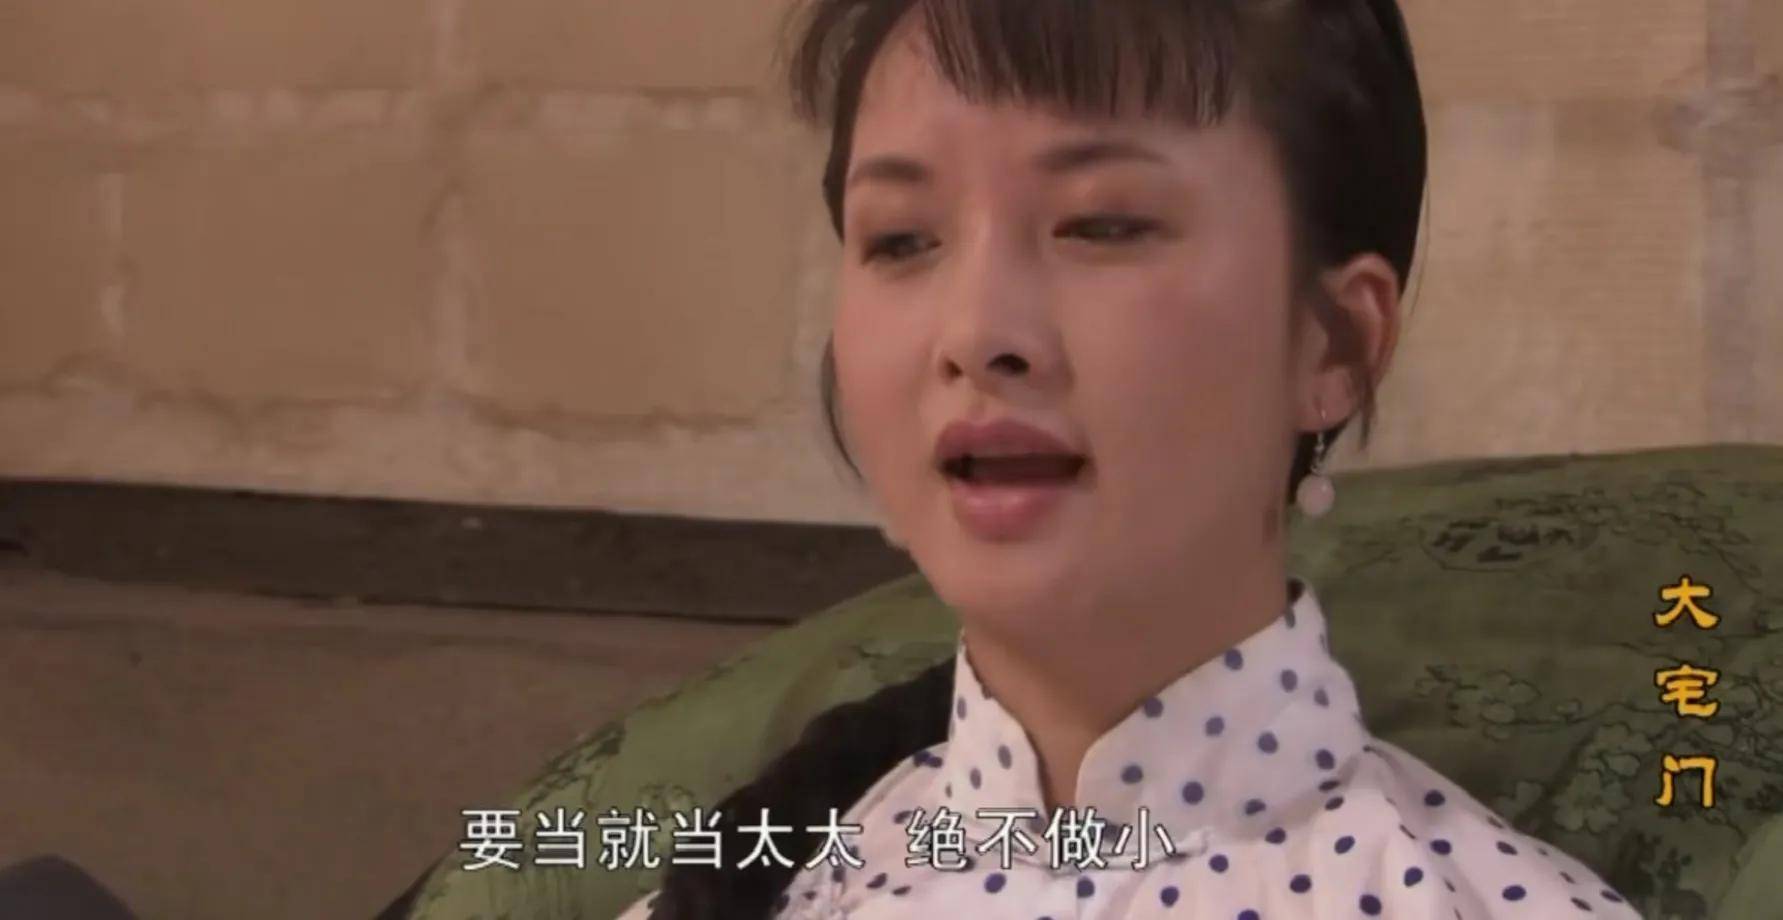 原创《大宅门》香秀屡次挫败杨九红,唯一一次低头,却尽显她的智慧!